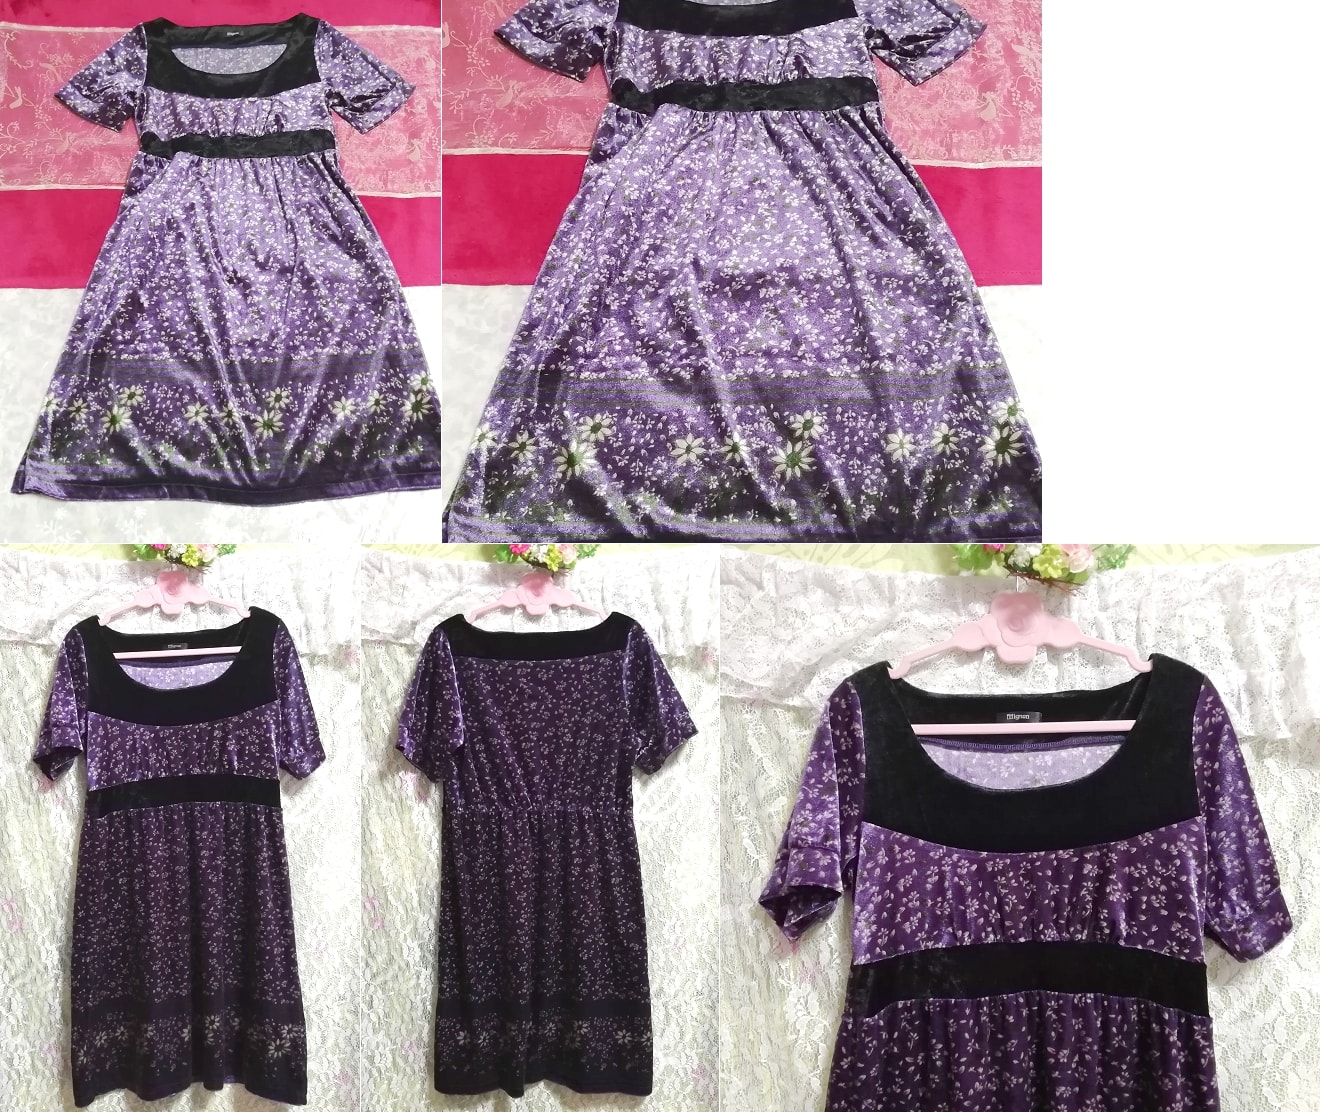 紫色丝绒花卉印花短袖睡衣睡袍束腰连衣裙, 迷你裙, 尺寸